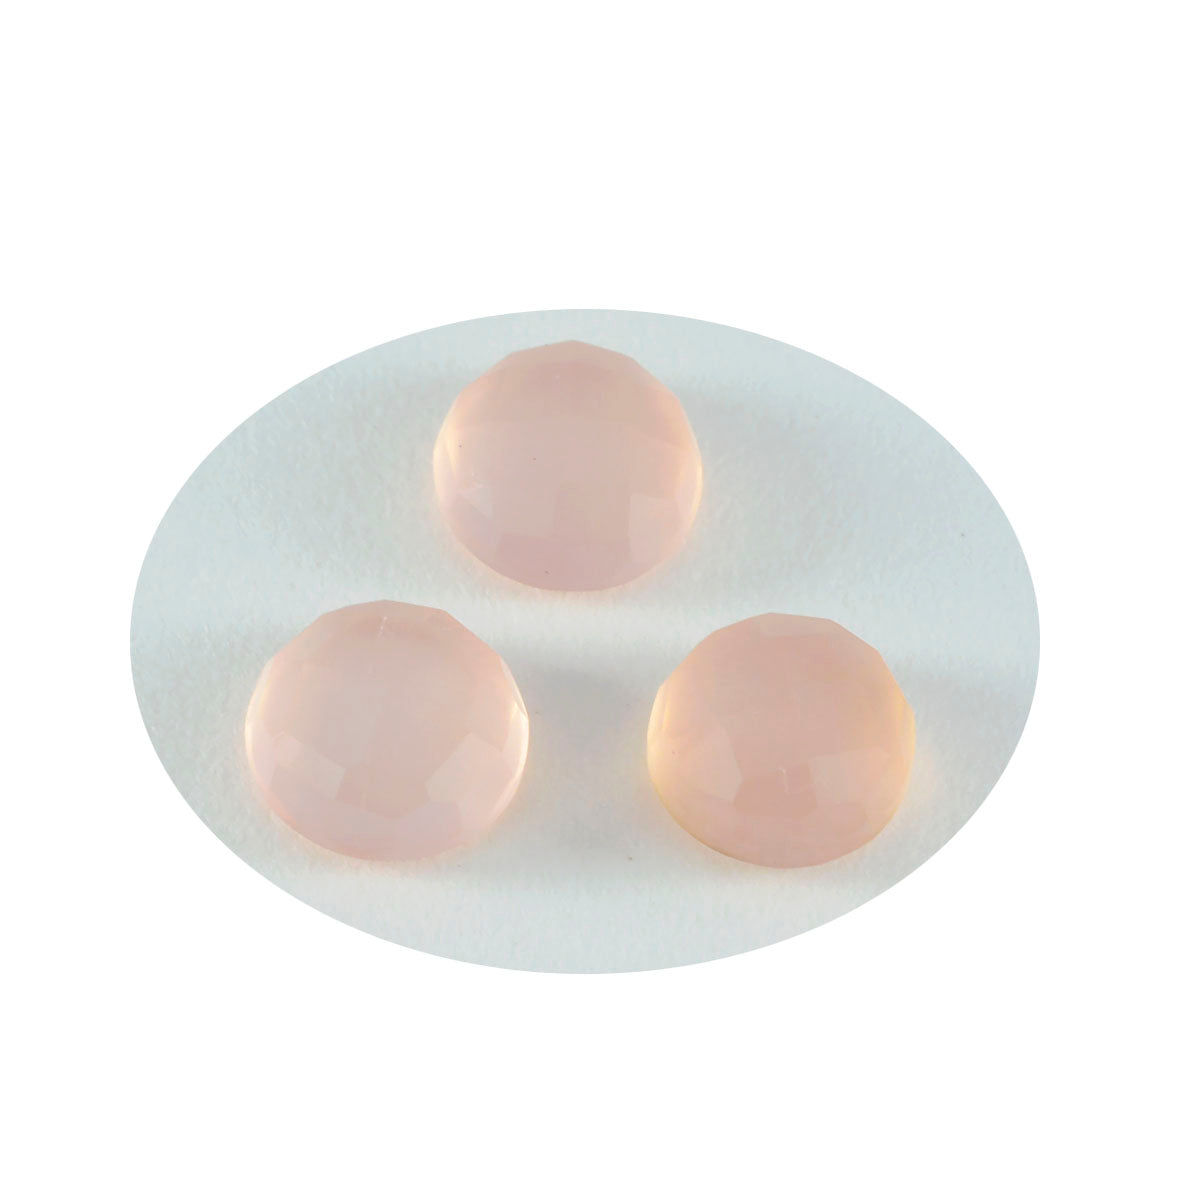 riyogems 1шт розовый кварц ограненный 15х15 мм круглая форма отличное качество россыпь